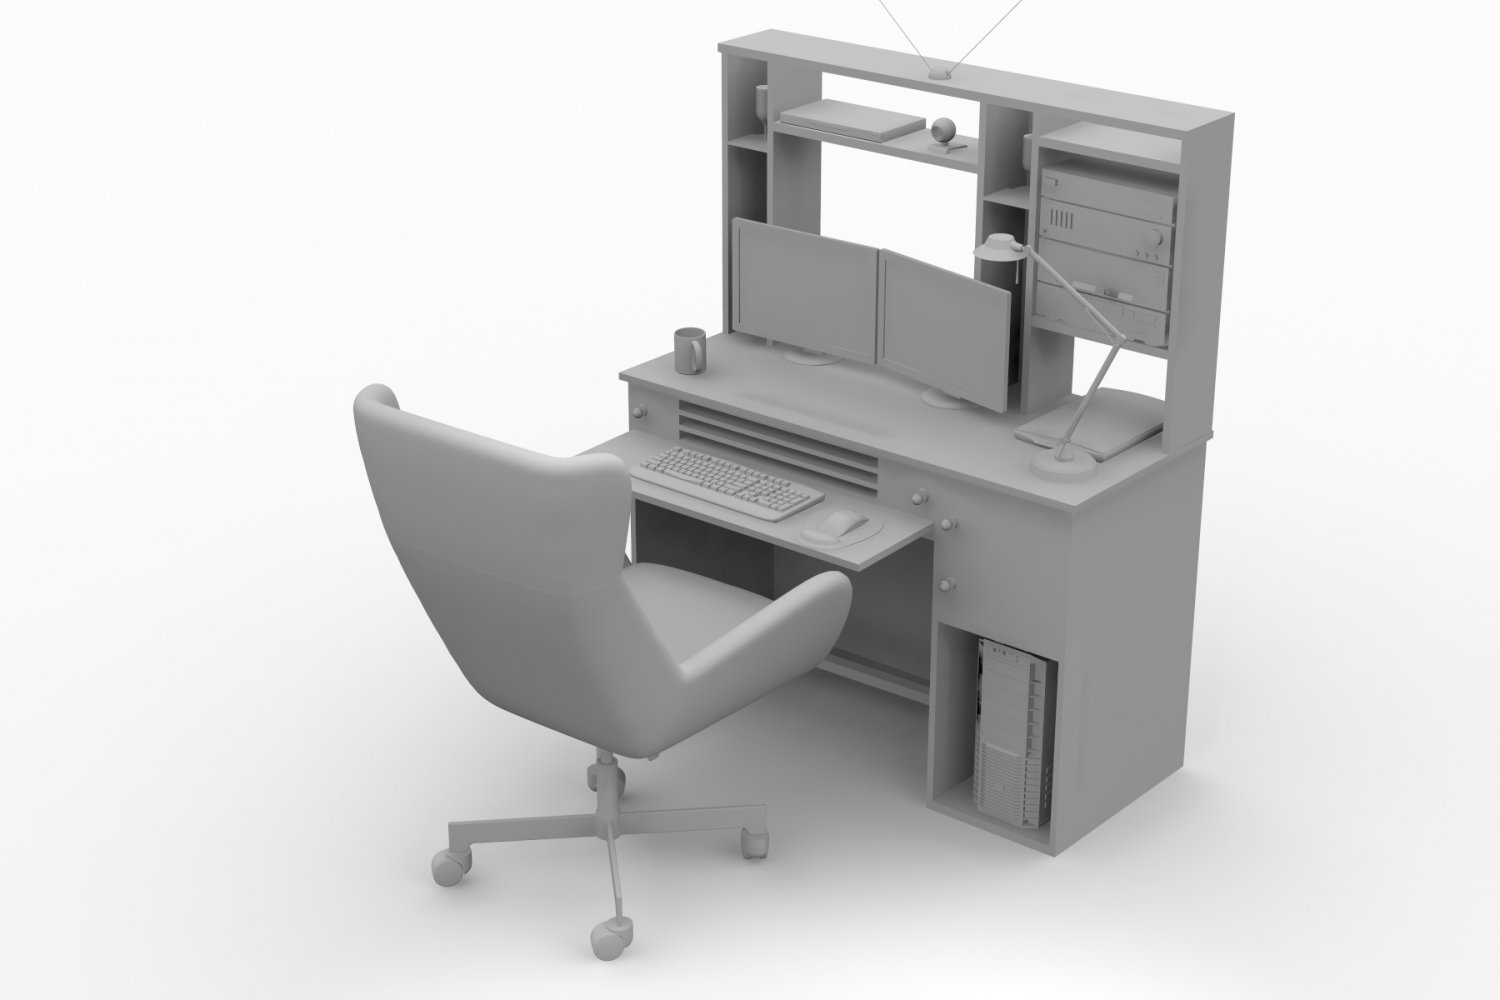 Computer 3d model. Секретер flatmate. Стол трансформер откидной секретер. Компьютерный стол секретер трансформер. Откидной механизм Desk.